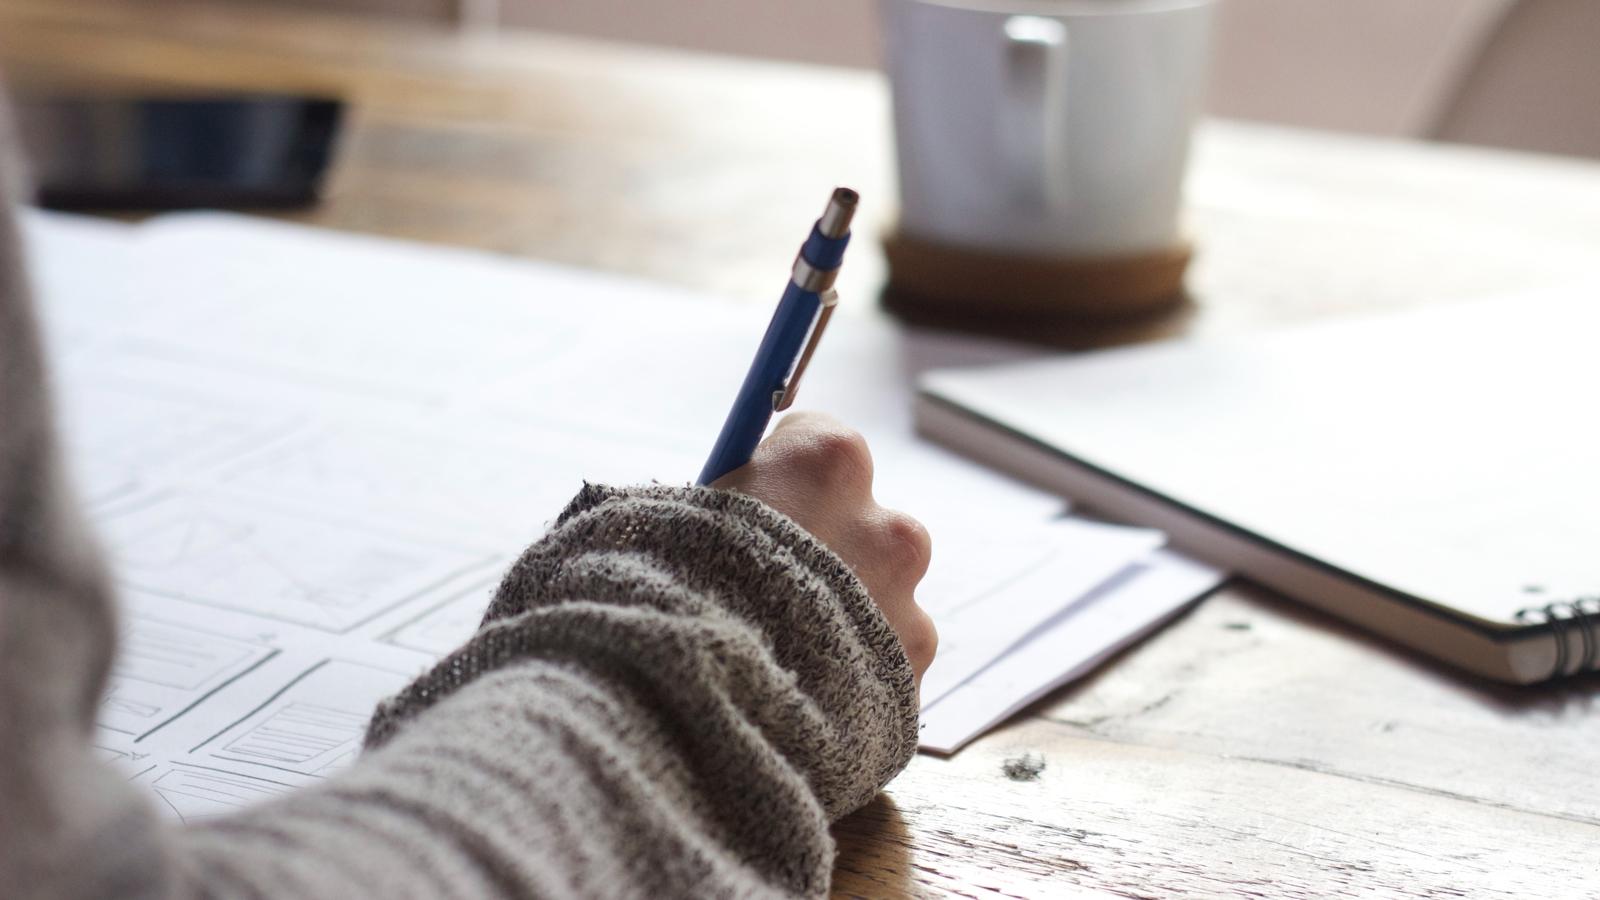 En hand i fokus som håller i en penna. Handen ligger på ett bord med papper och ett block på.